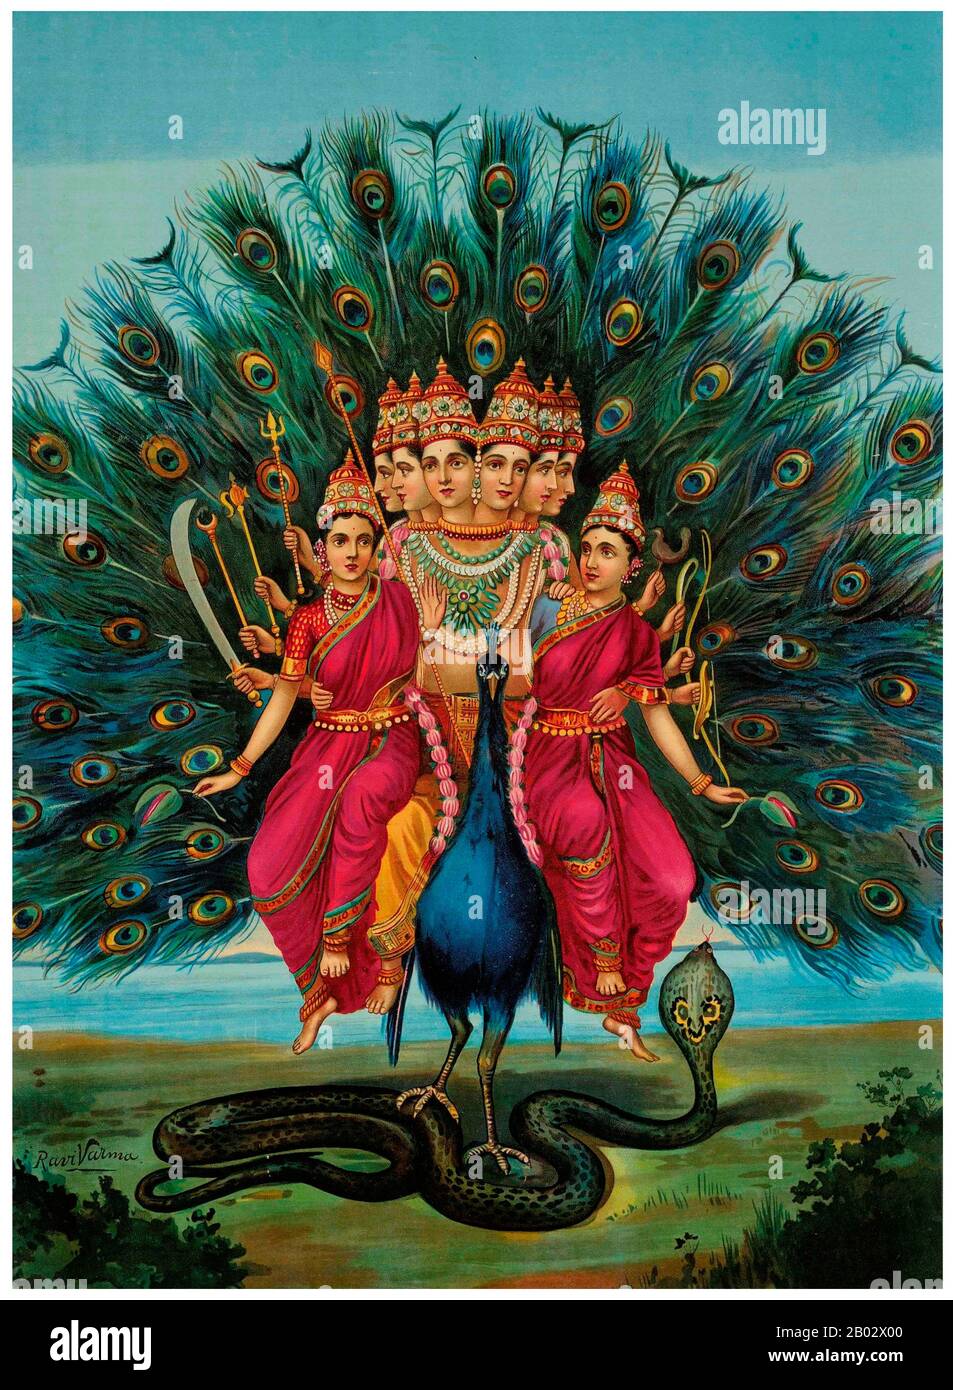 Kartikeya, auch als Skanda, Kumaran, Kumara Swami und Subramaniyan bekannt, ist der hinduistische kriegsgott. Er ist der Oberbefehlshaber der Armee der Devas (Götter) und der Sohn von Shiva und Parvati. Murugan wird oft als "Tamil Kadavul" (was 'Gott der Tamilen' bedeutet) bezeichnet und vor allem in Gebieten mit tamilischen Einflüssen verehrt, insbesondere in Südindien, Sri Lanka, Mauritius, Indonesien, Malaysia, Singapur und Reunionsinsel. Seine sechs wichtigsten Schreine in Indien sind die Arupadaivedu-Tempel in Tamil Nadu. In Sri Lanka ist der heilige historische Kallur Kandaswamy Tempel in Jaffna und Katarag Stockfoto